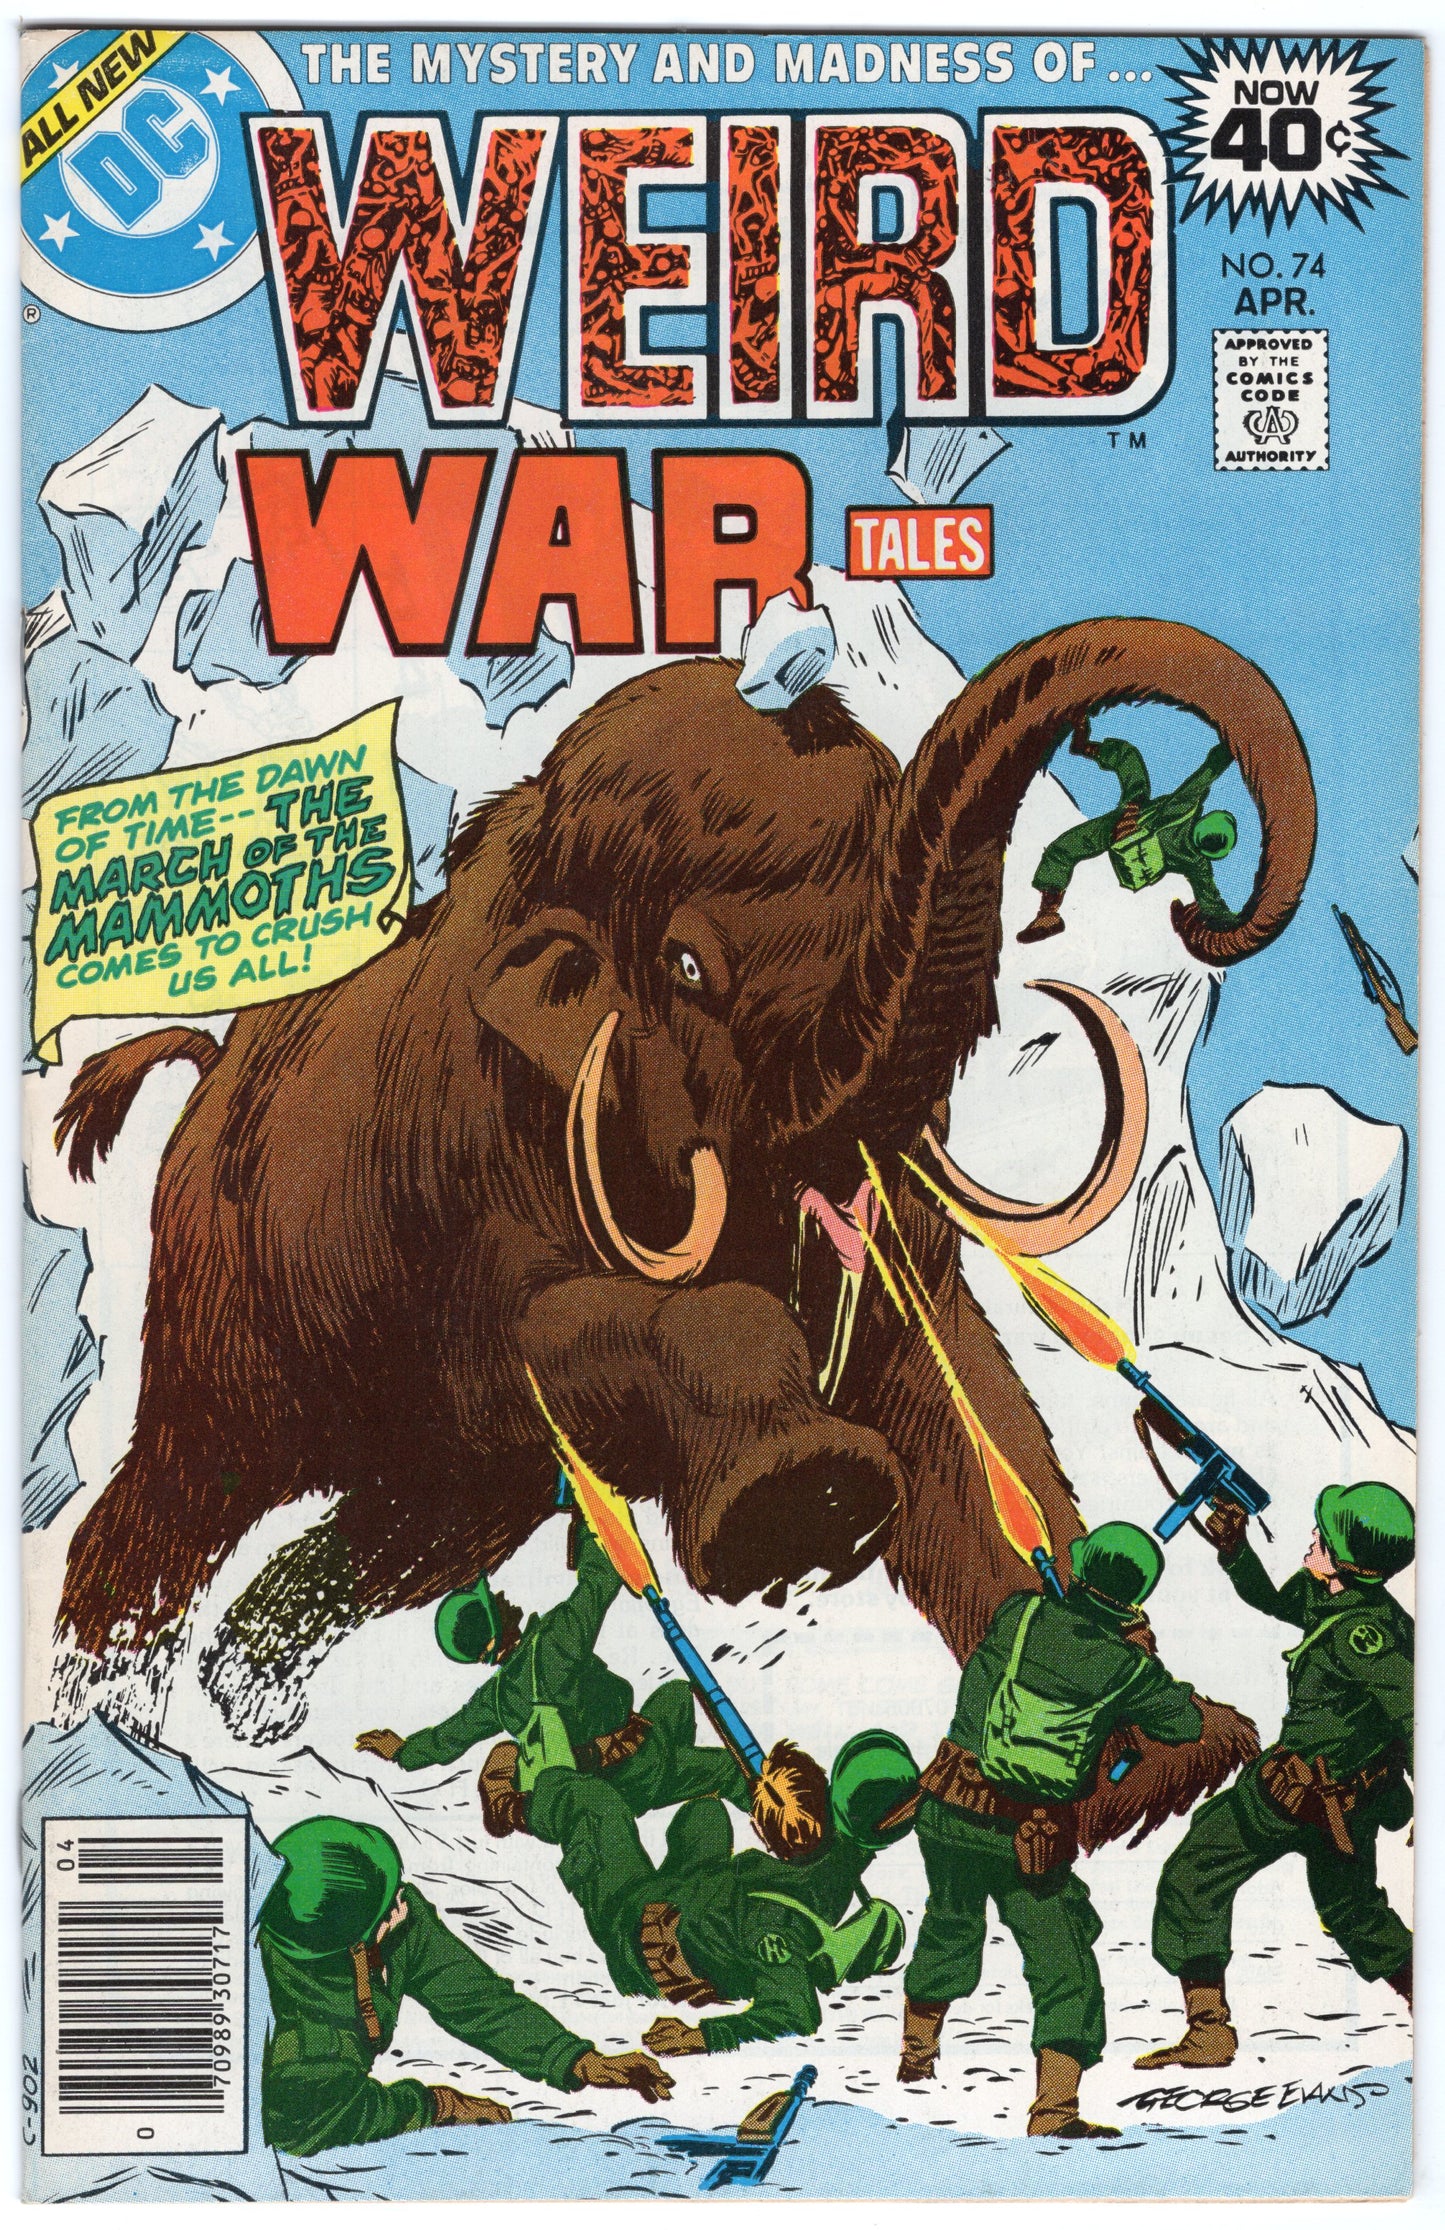 Weird War Tales "The Cold War!" - Issue #74 (April, 1979 - DC Comics) VF+